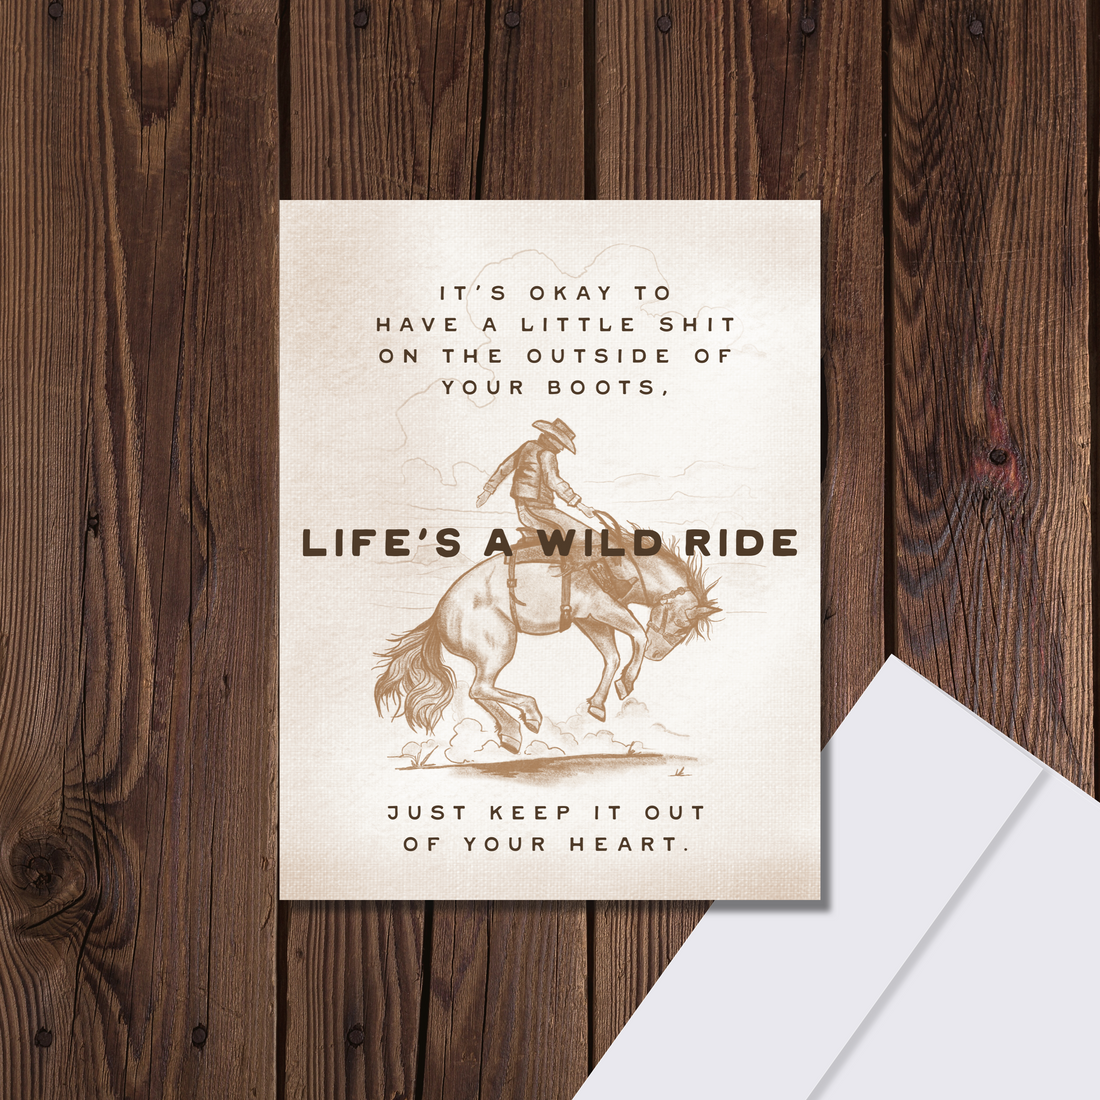 Life’s a Wild Ride